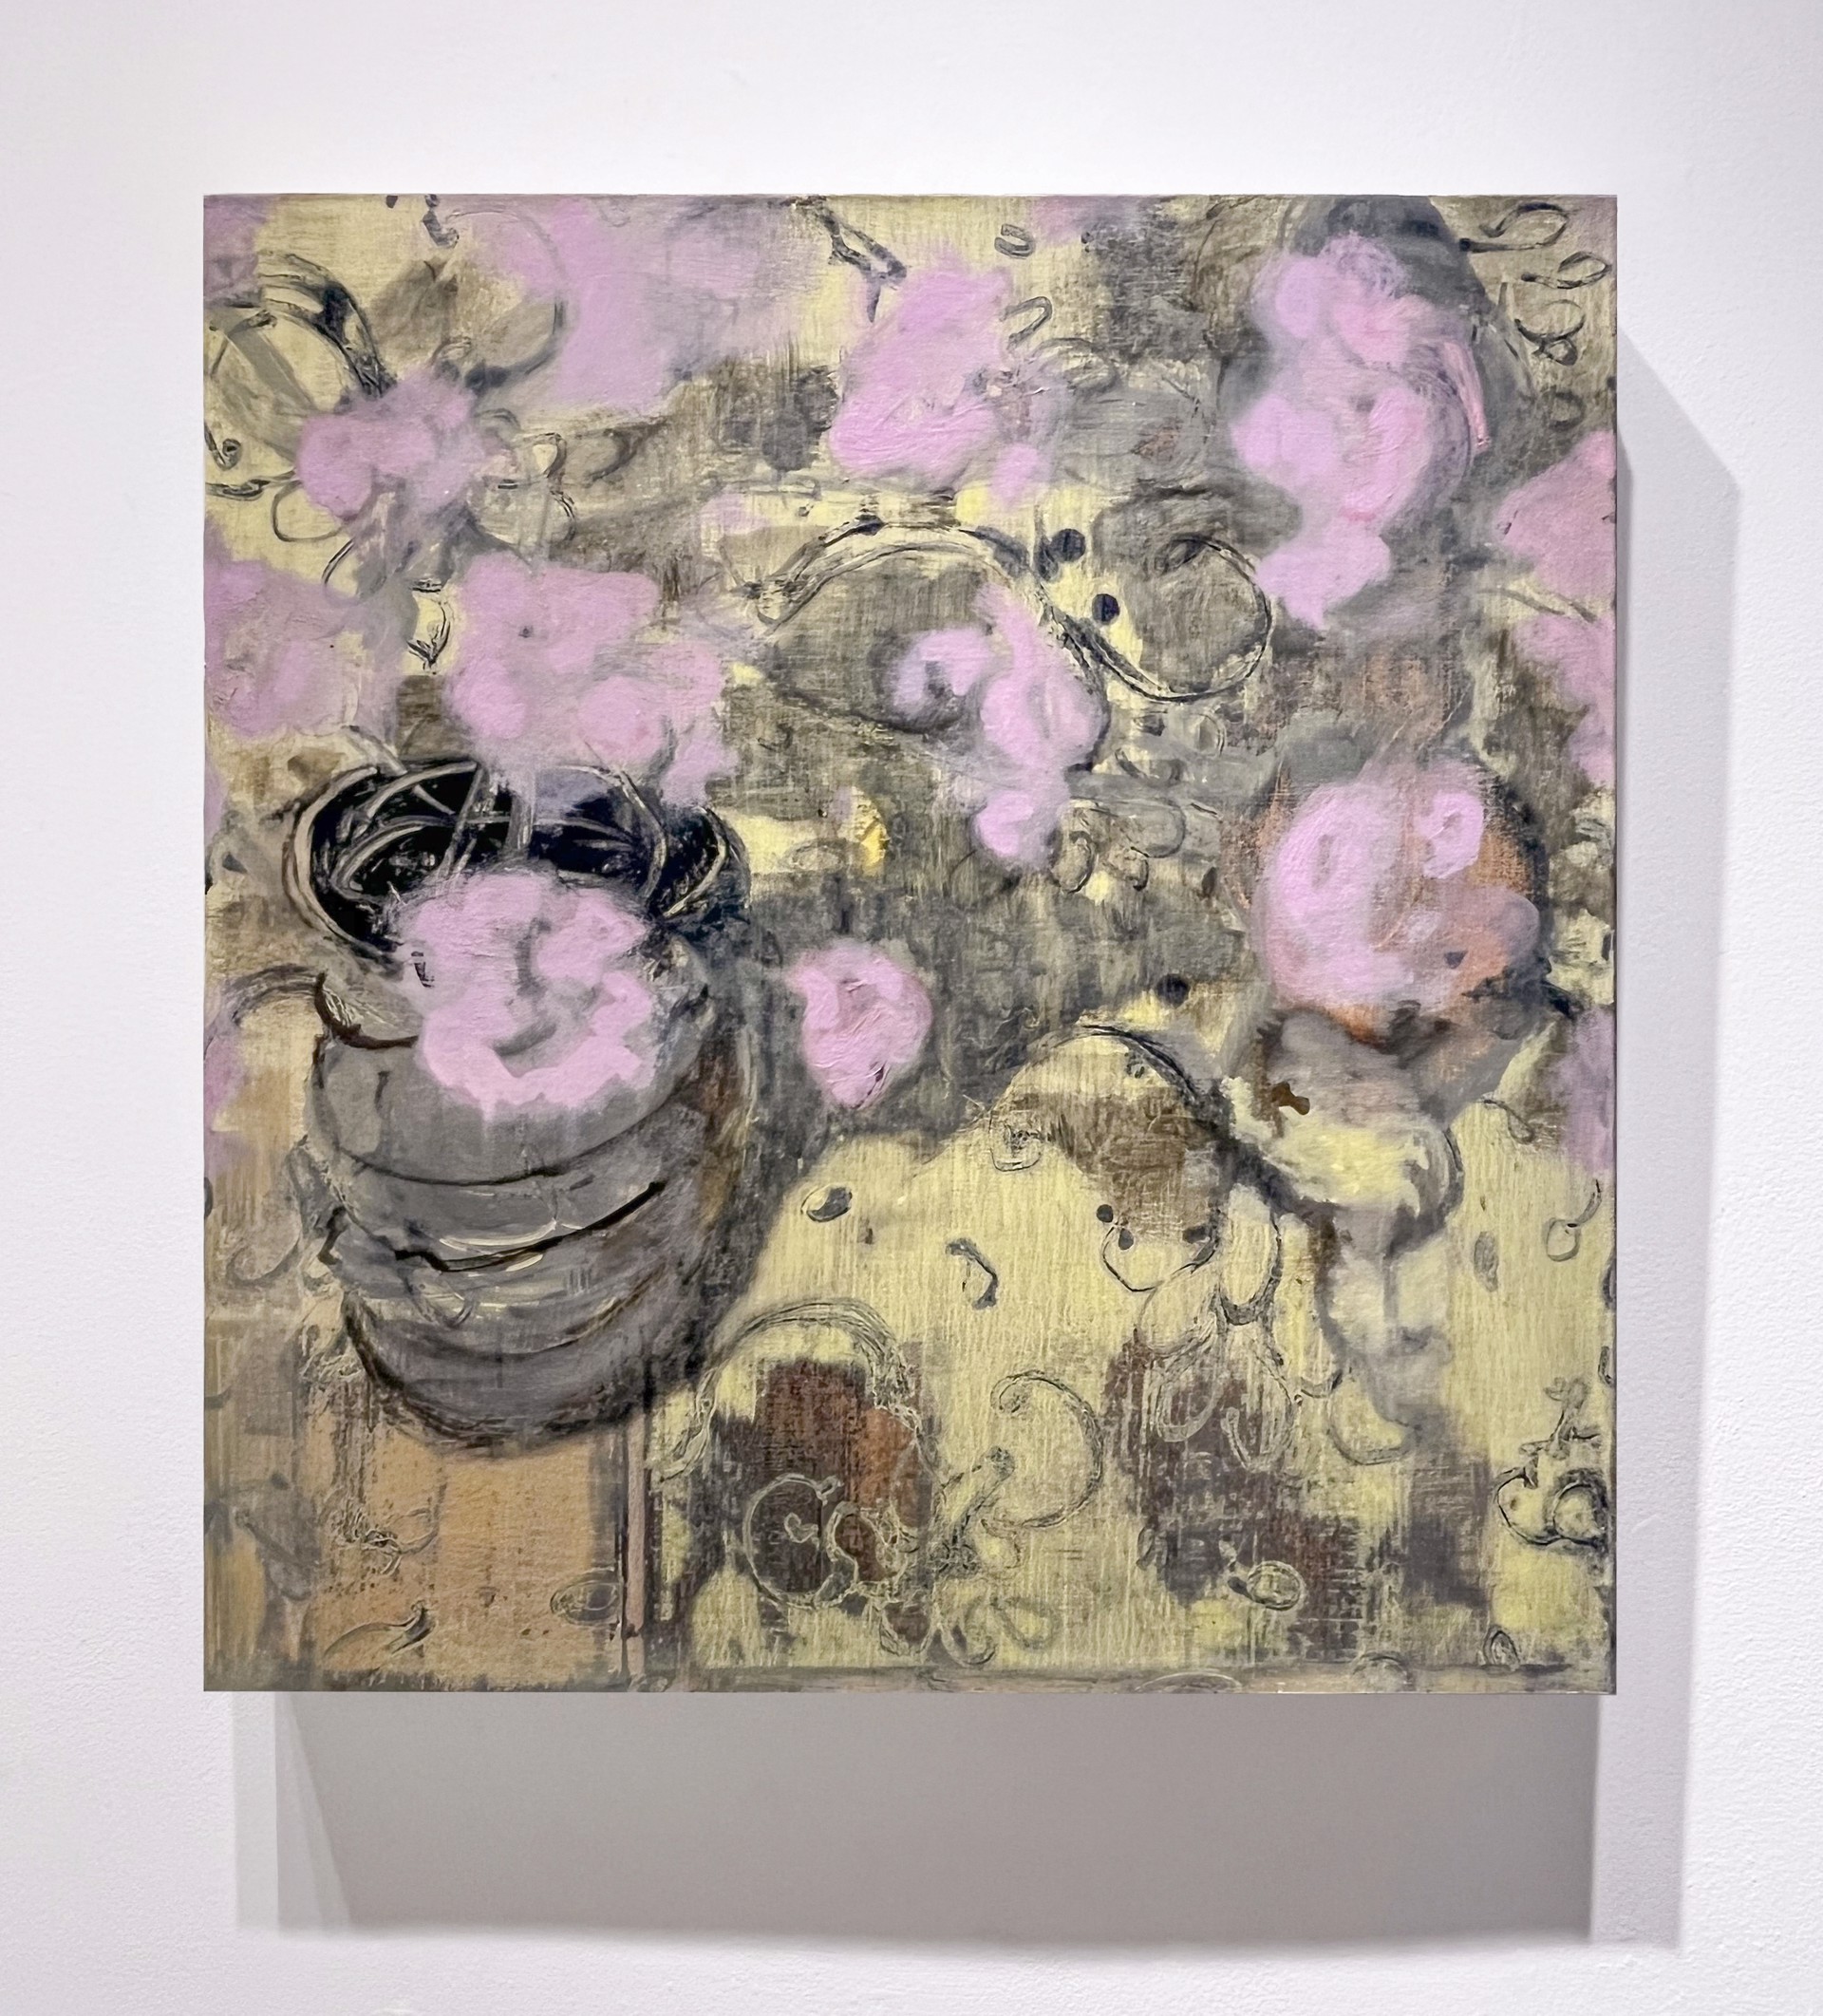 Vase of Pinks by David Konigsberg